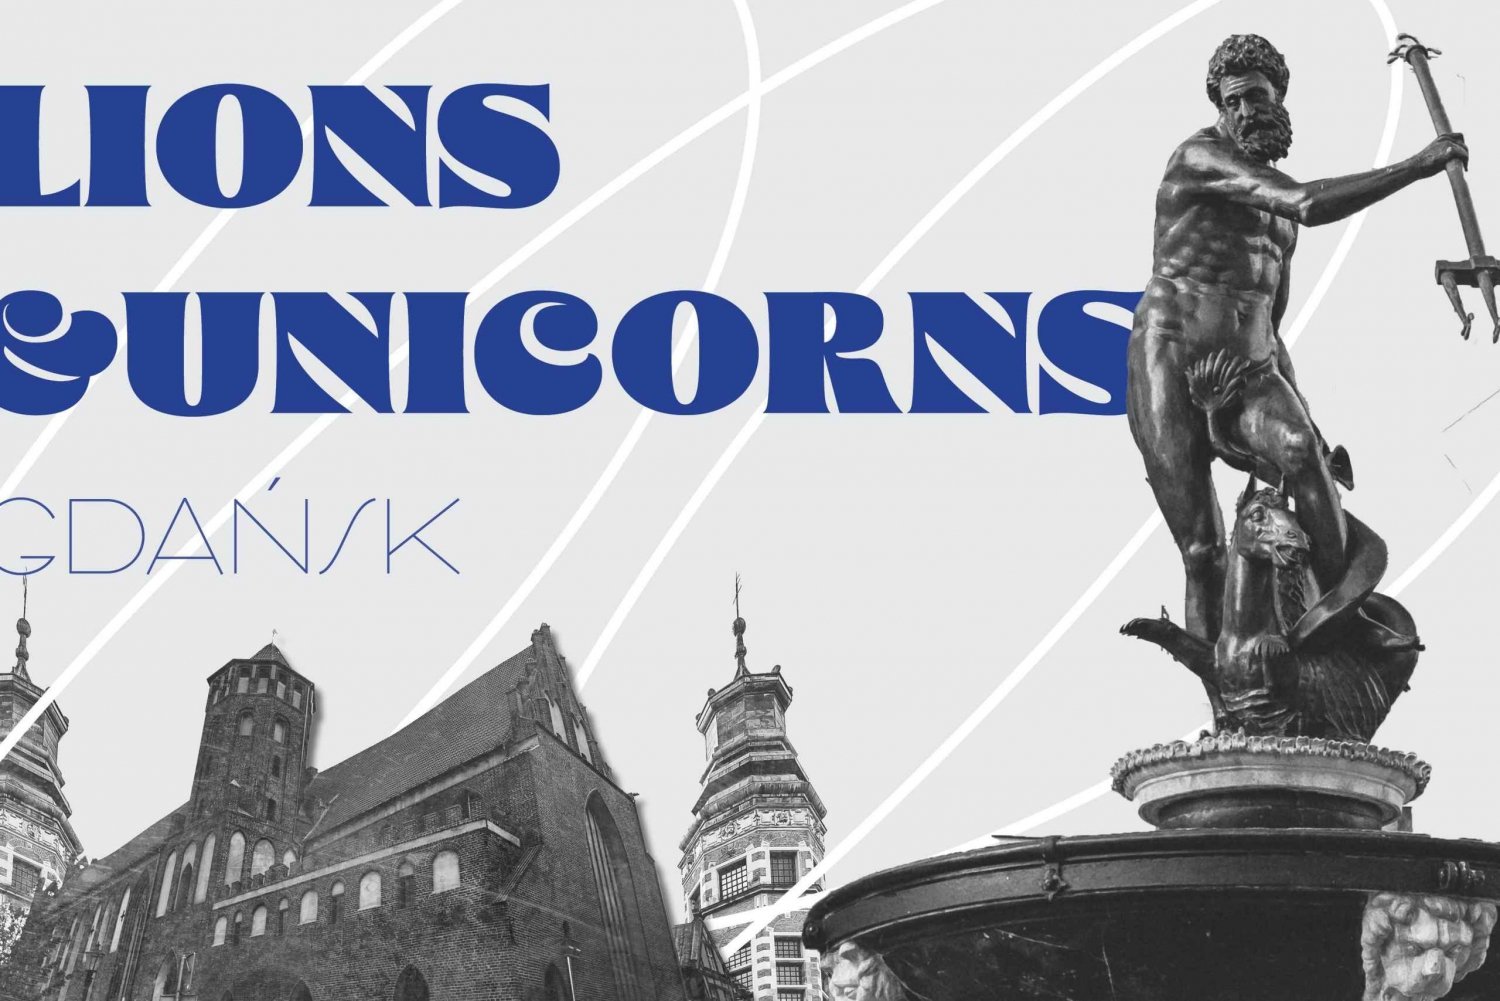 Fantastico gioco di fuga all'aperto di Danzica: Leoni e Unicorni